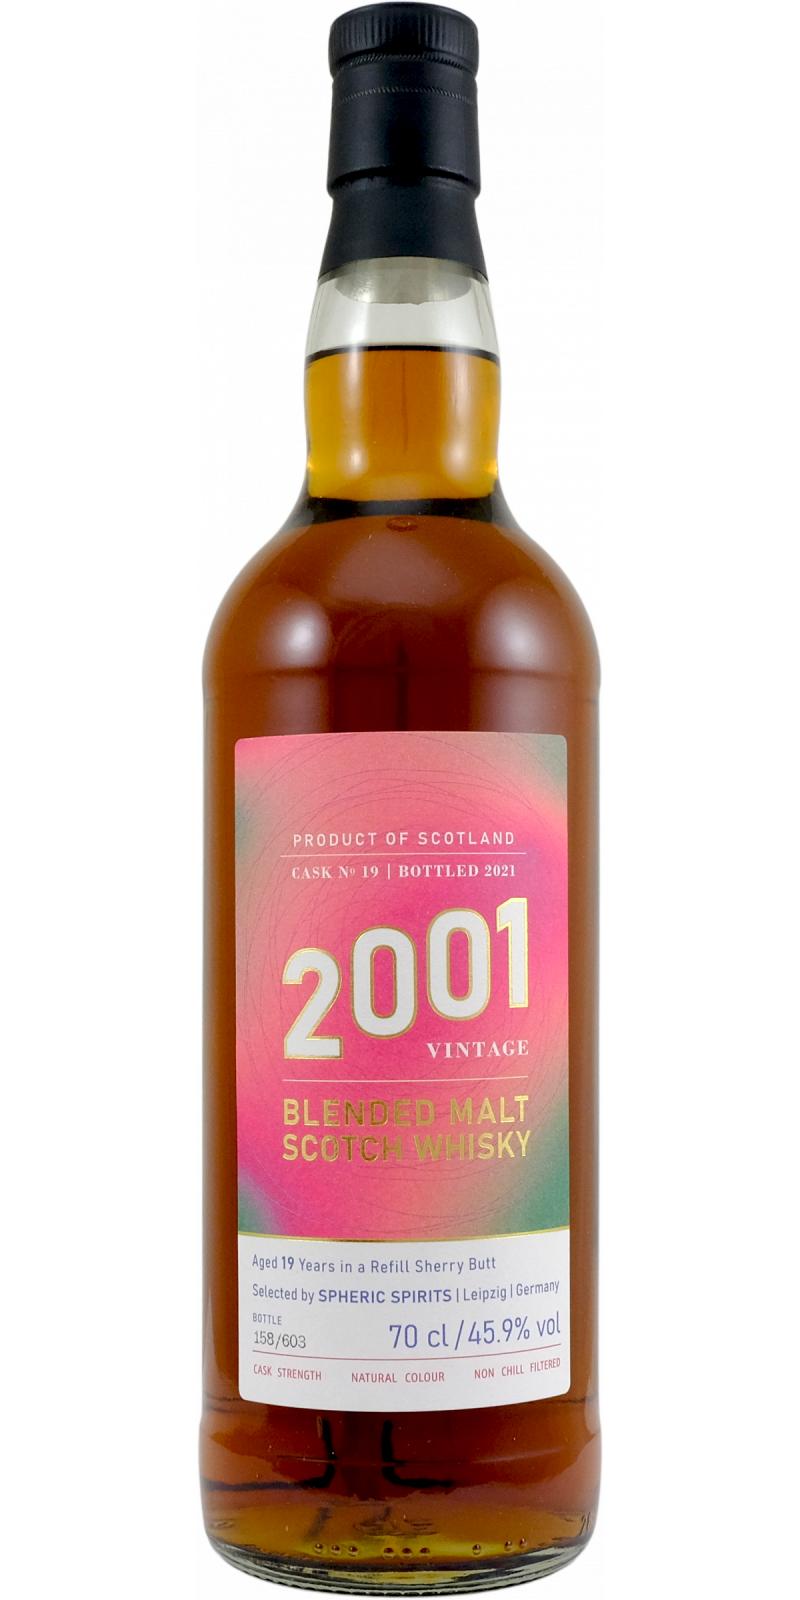 Blended Malt Scotch Whisky 2001 SpSp